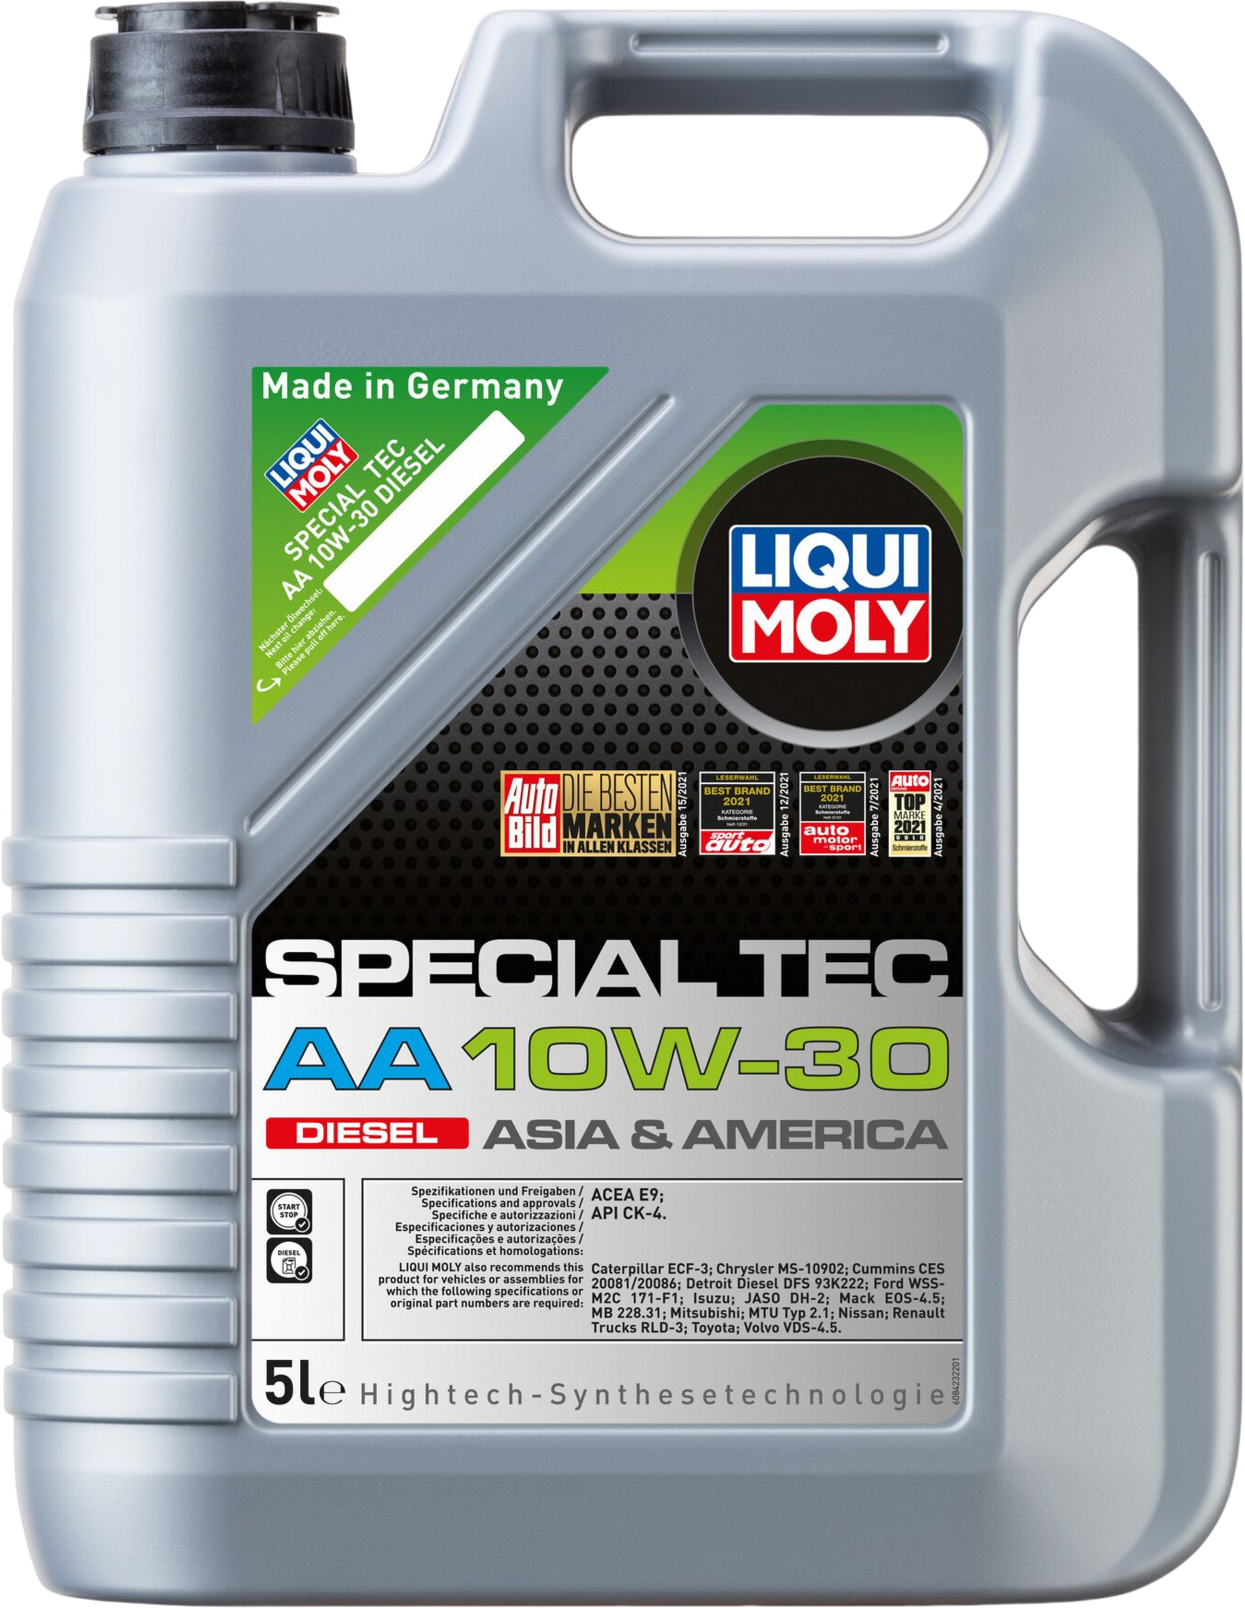 Liqui Moly Special Tec AA 10W-30 Diesel, 5 lt